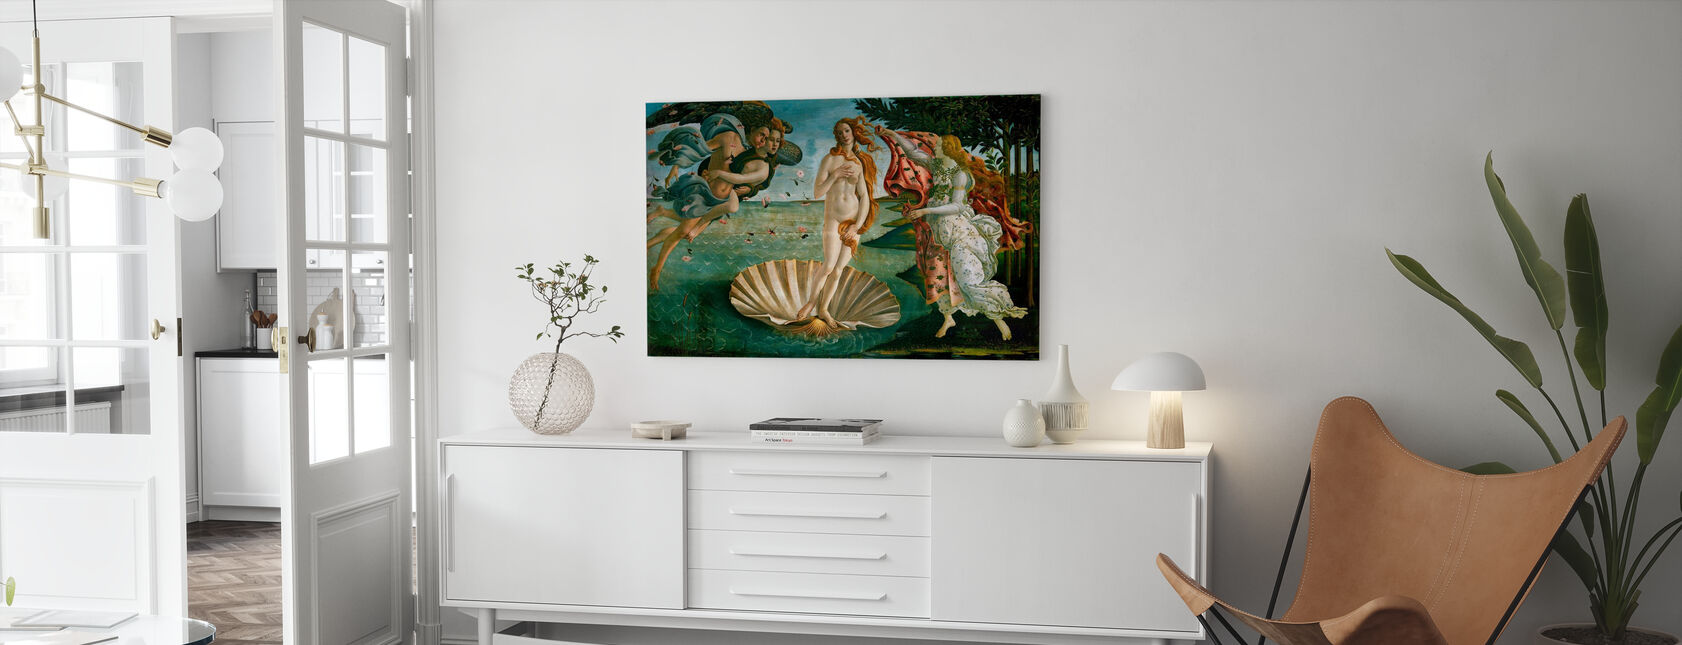 Sandro Botticelli - Naissance de Vénus - Impression sur toile - Salle à manger